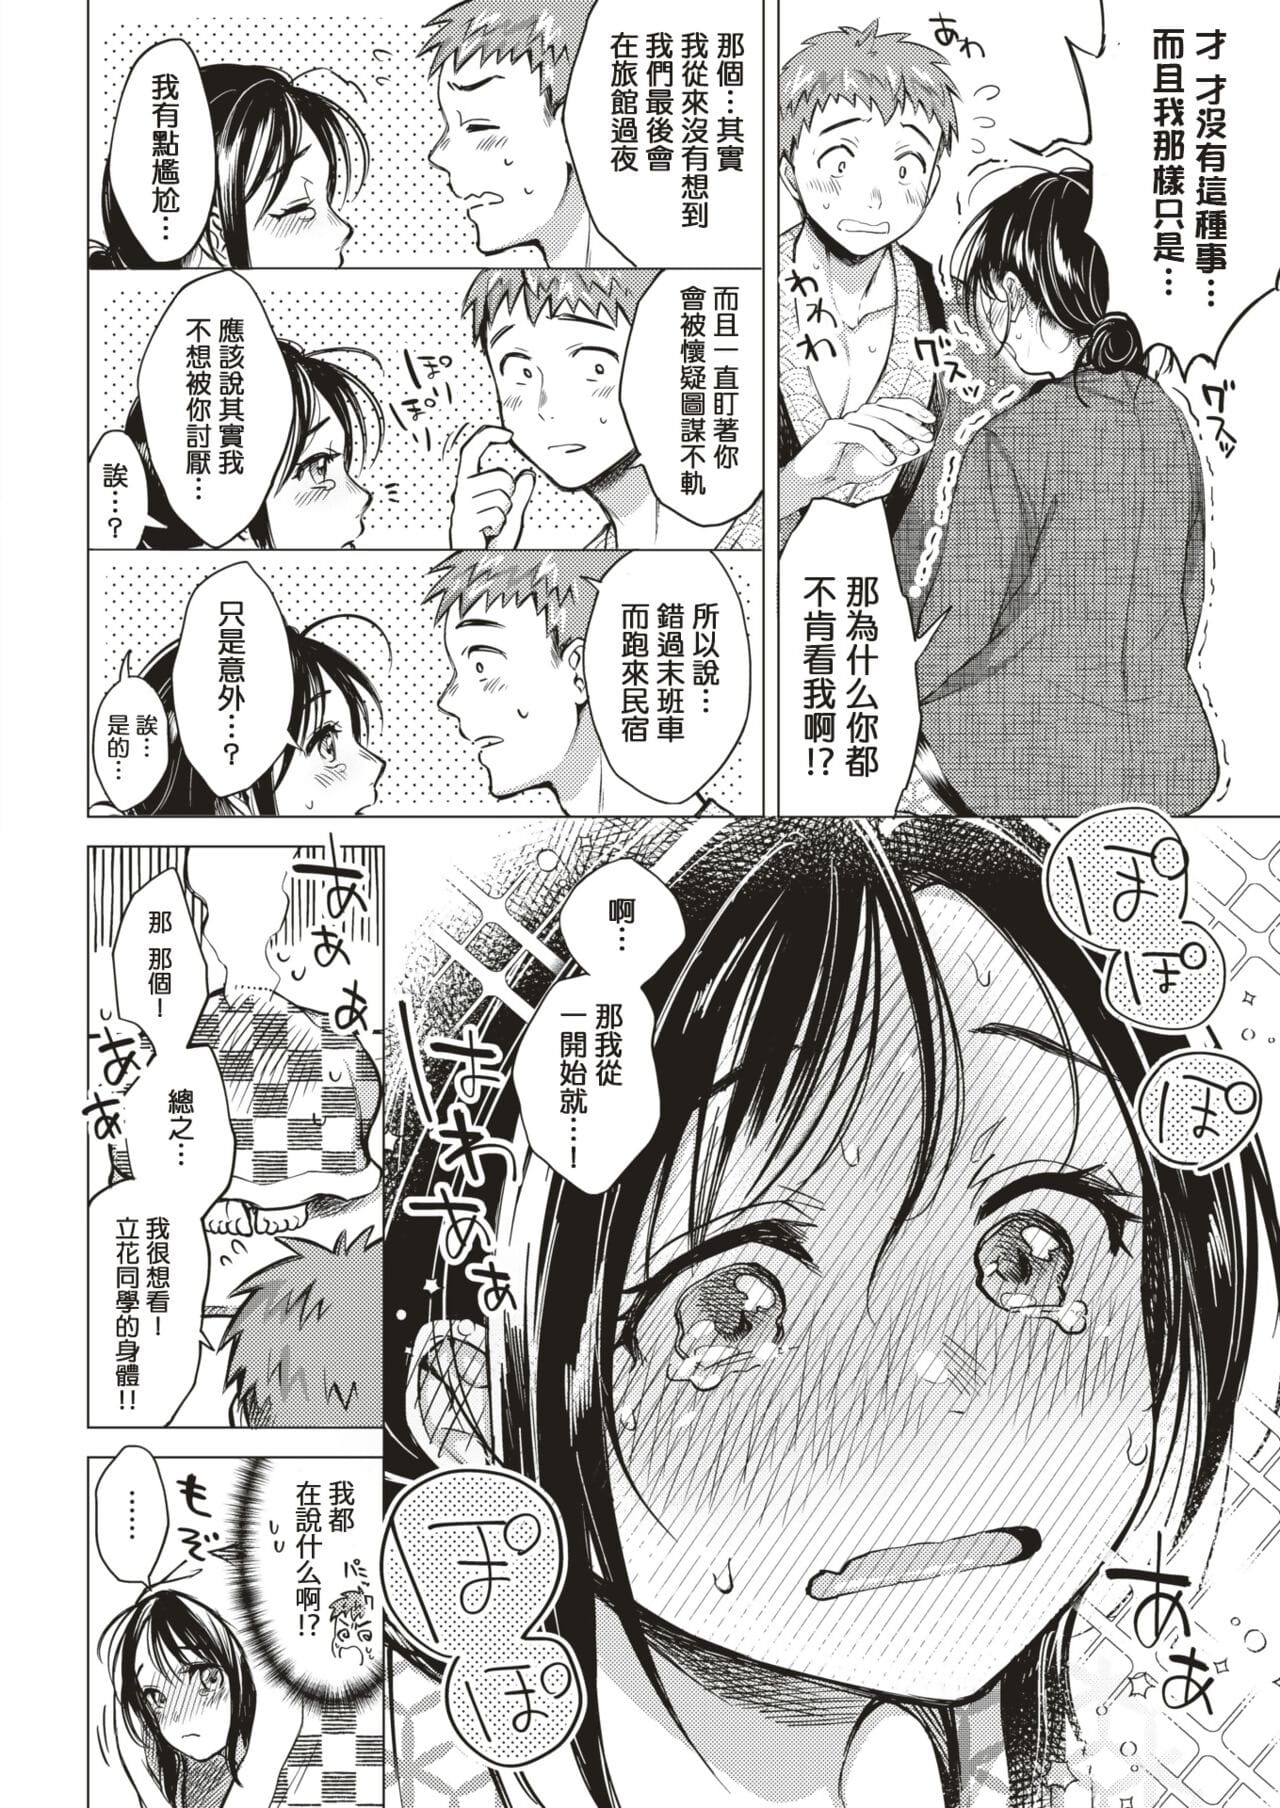 7 gatsu no ougonhi page 1